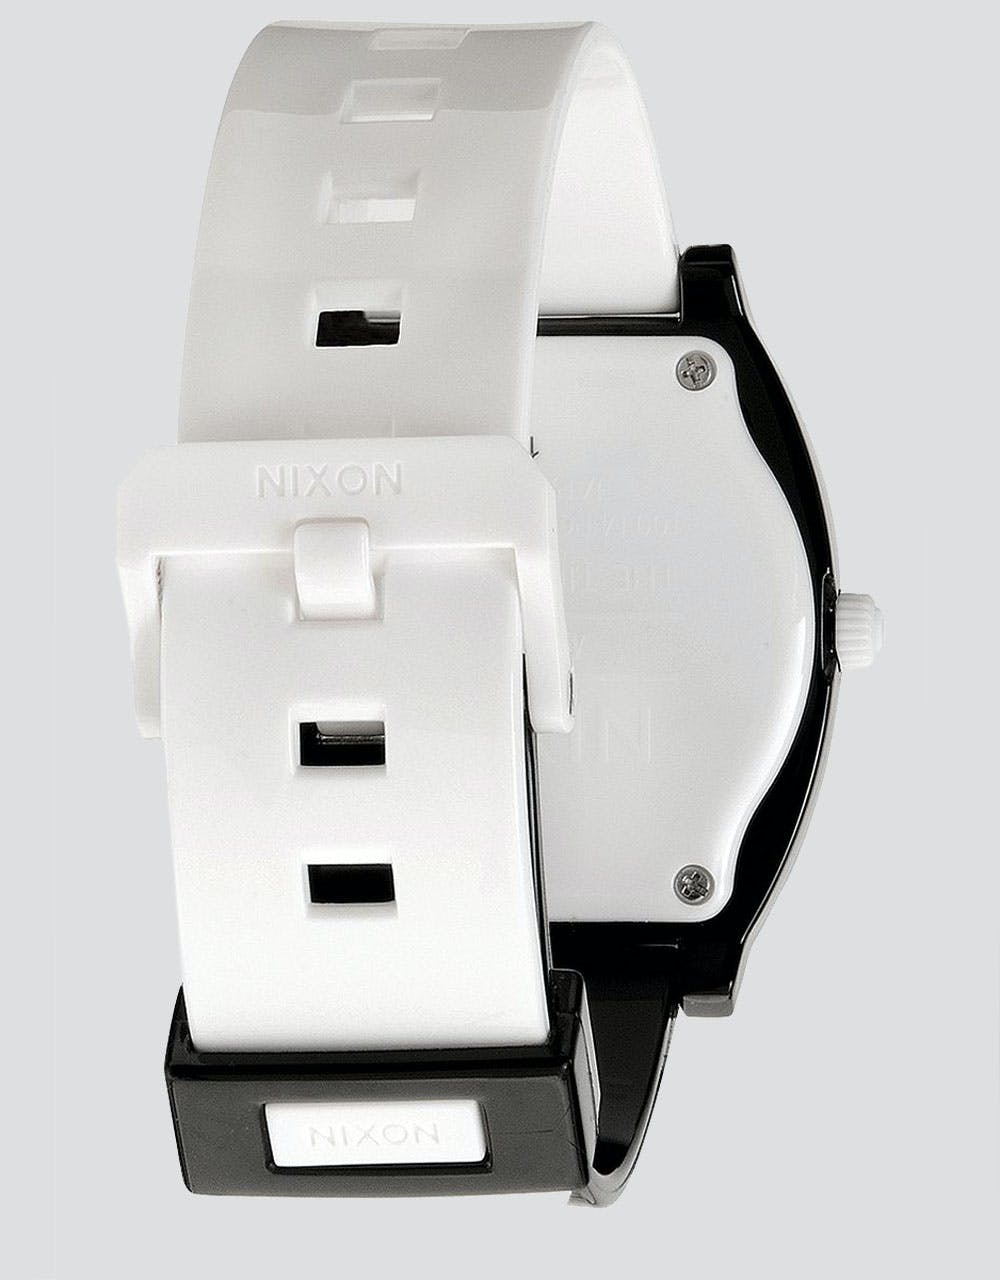 Nixon Time Teller P Watch - Black/White